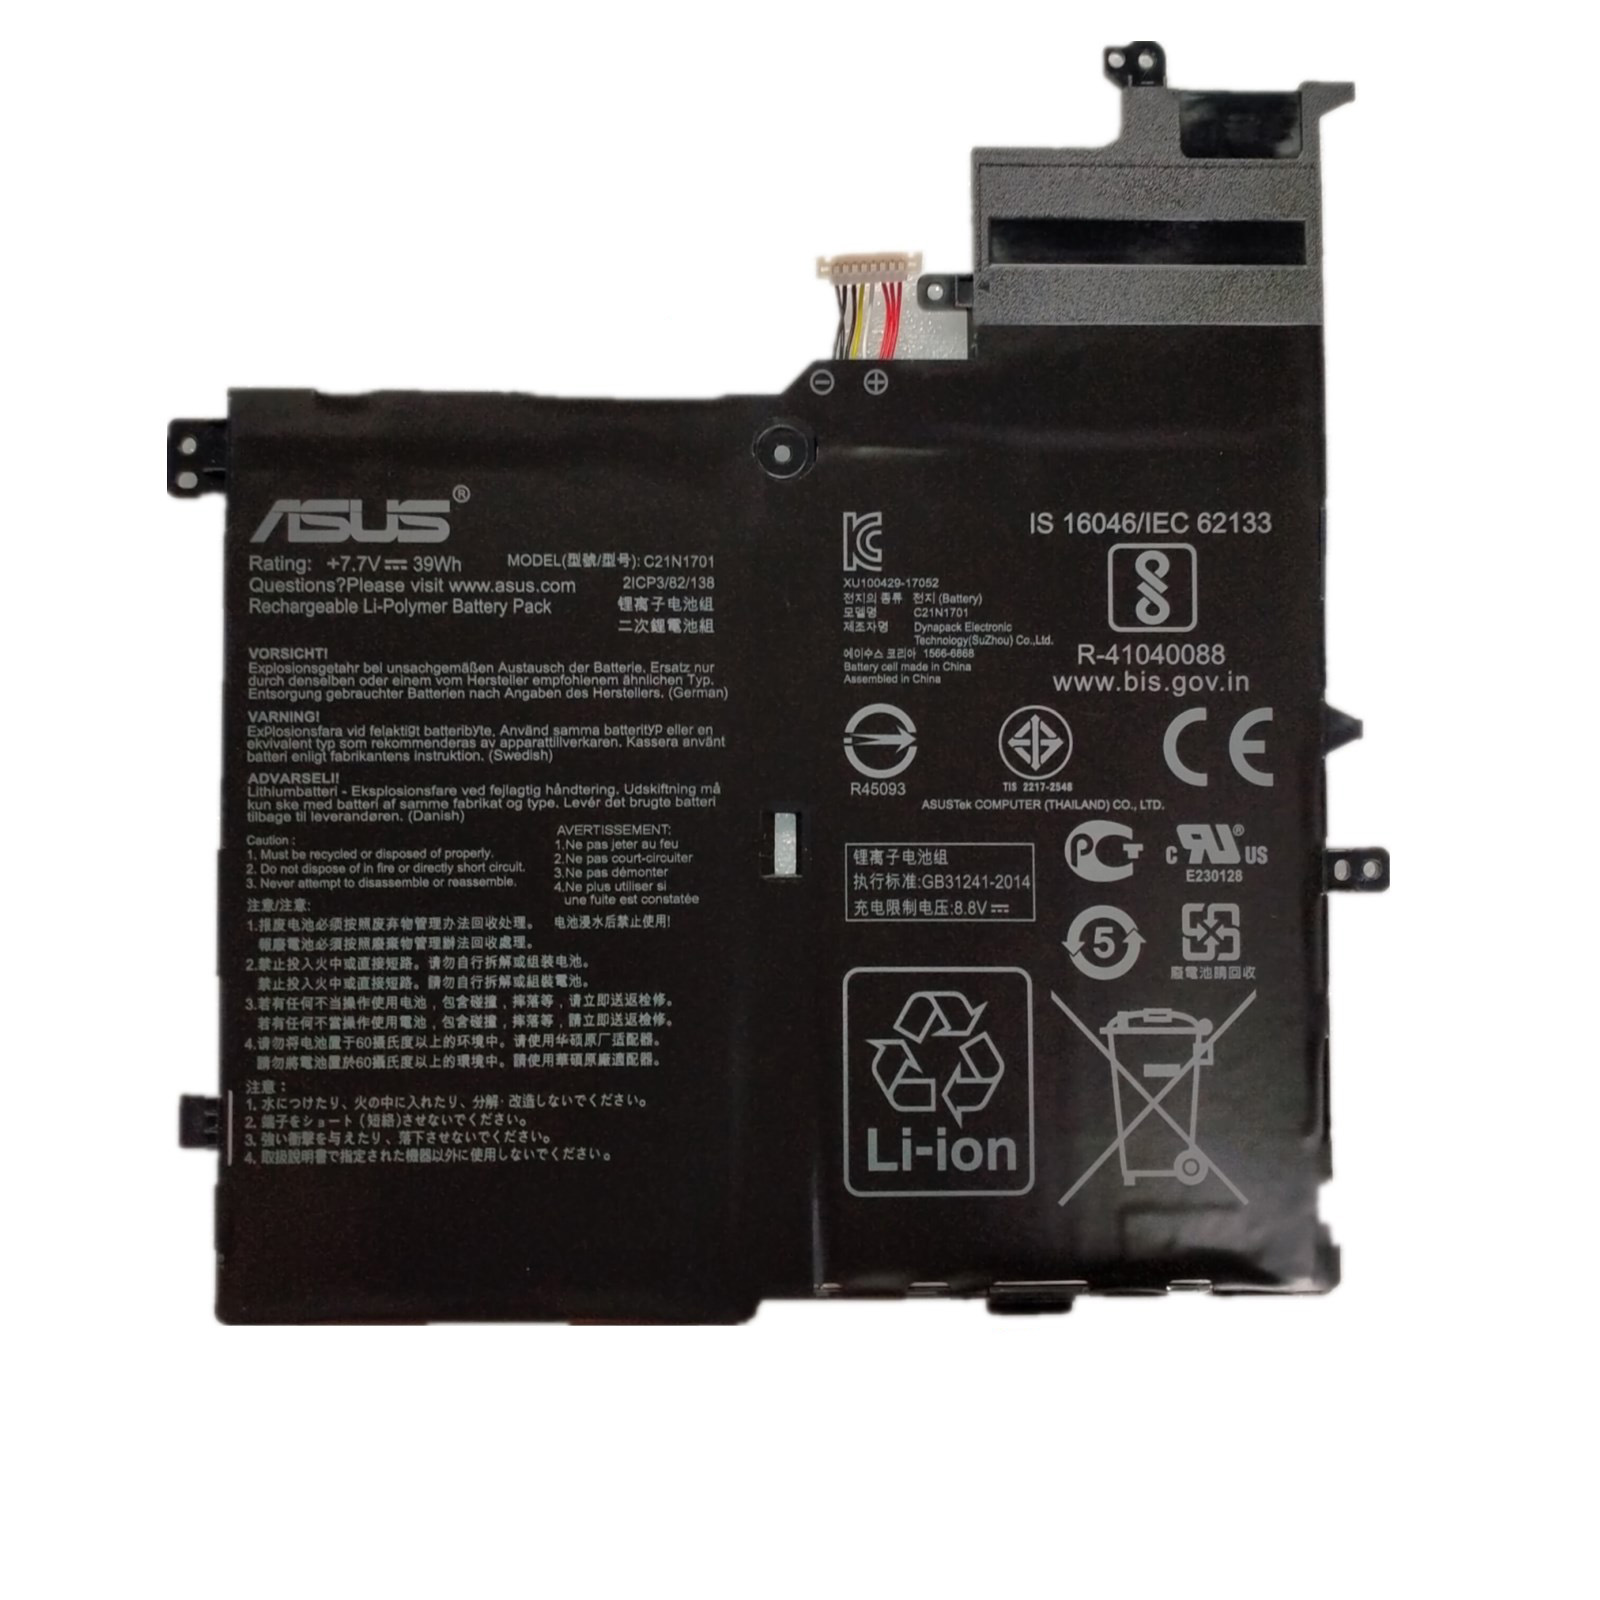 Asus VivoBook S14 S406UA-BM216T 7.7V 39Wh 5070mAh Battery